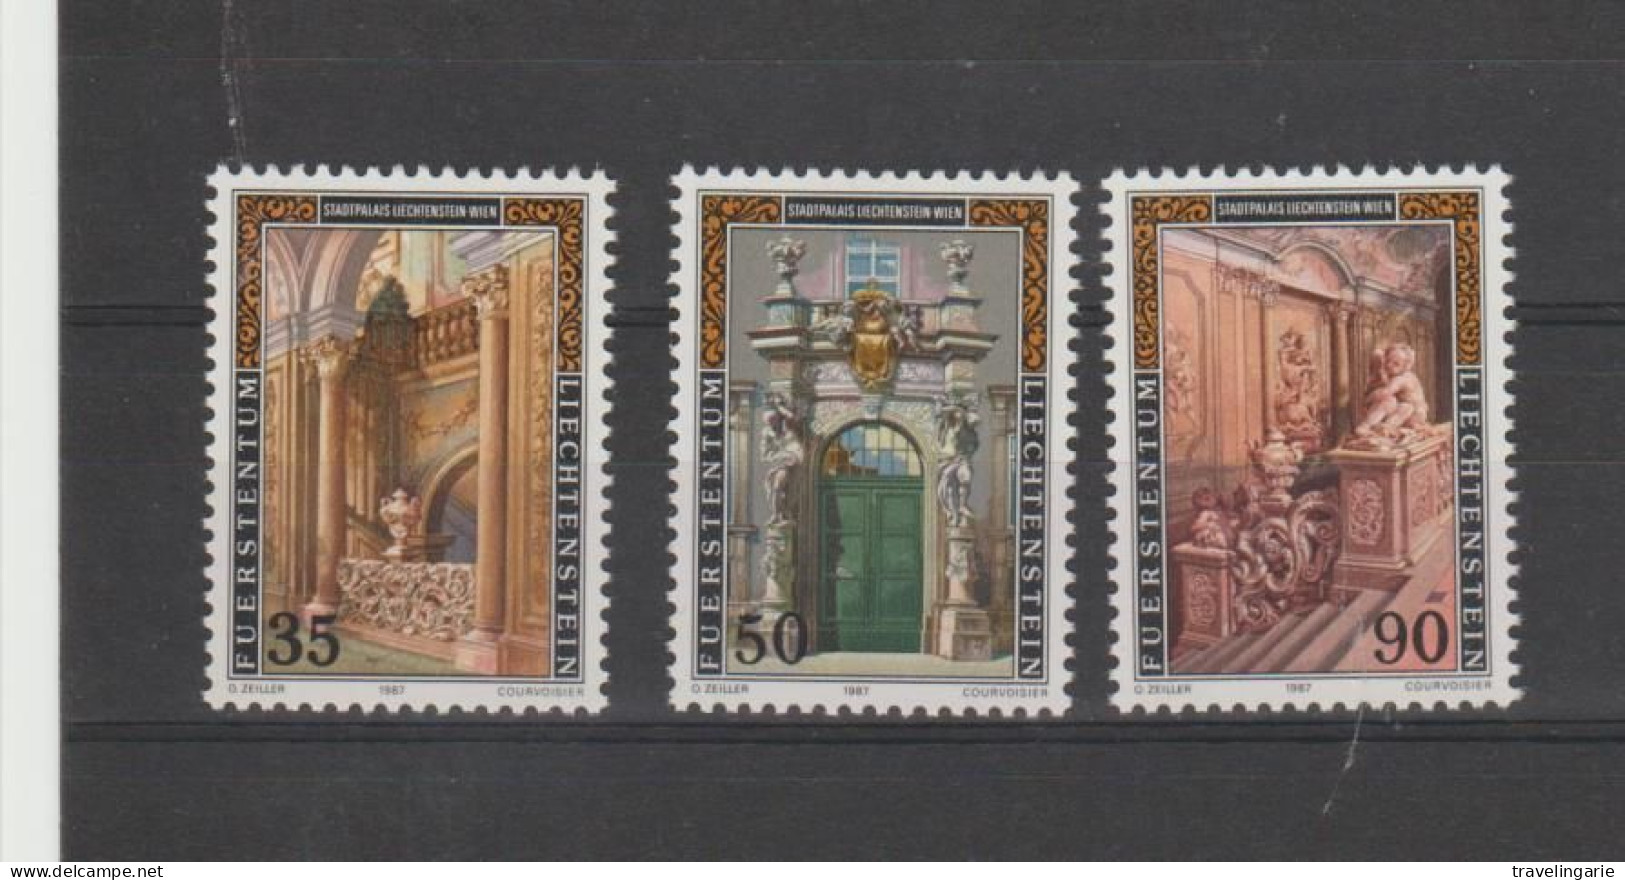 Liechtenstein 1987 Liechtenstein Palace In Vienna ** MNH - Unused Stamps